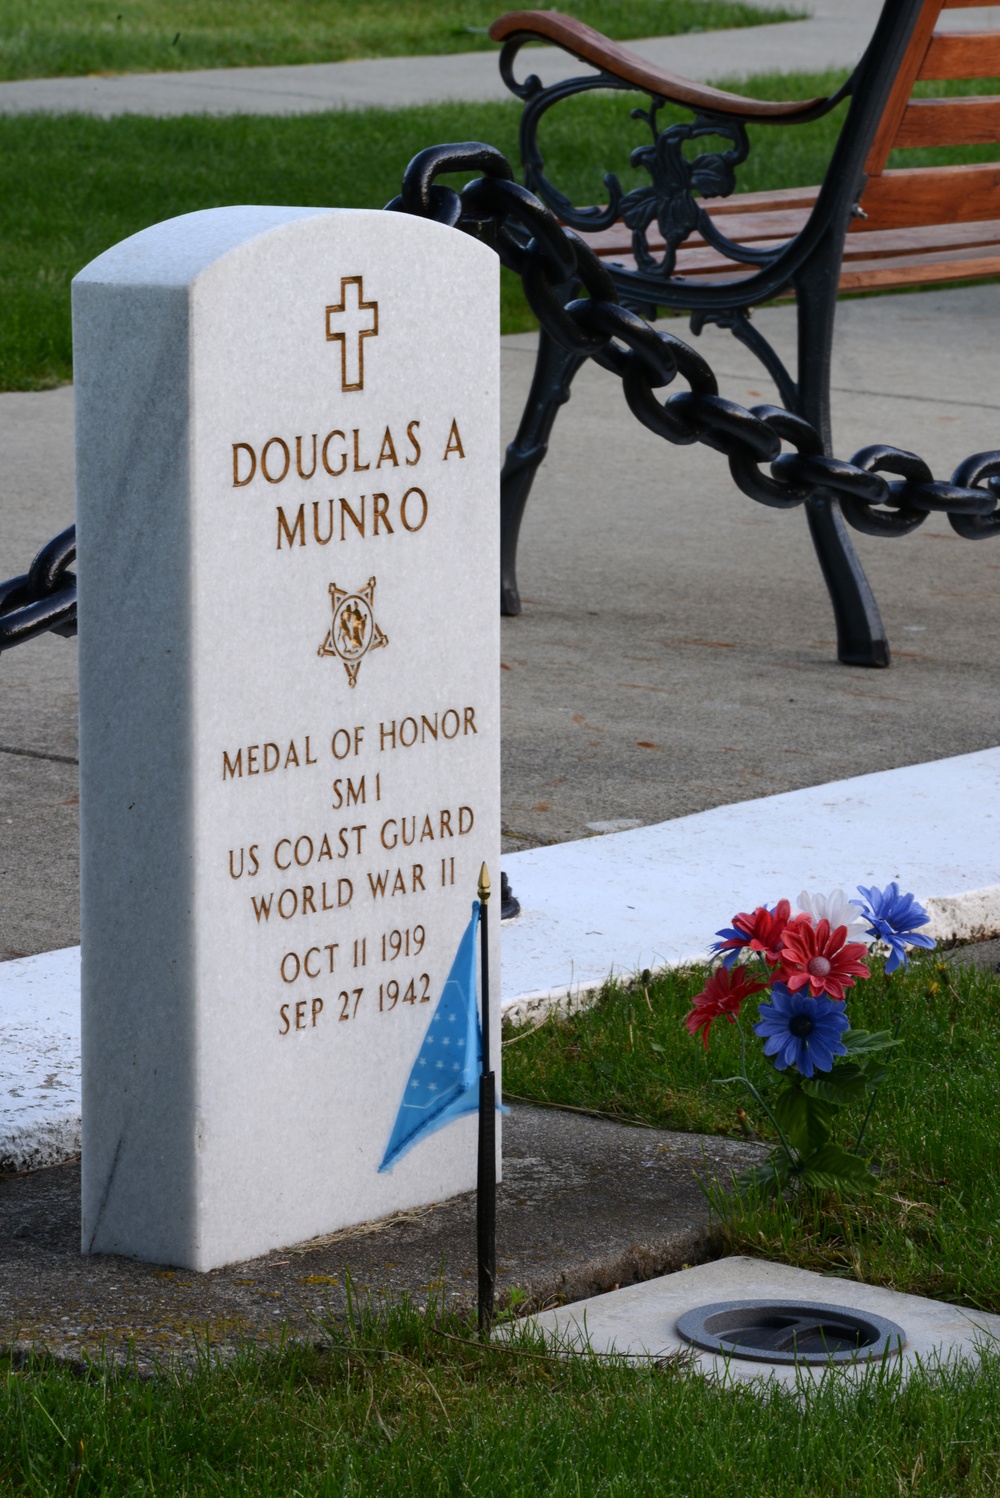 Douglas Munro gravesite and memorial in Cle Elum, Wash.